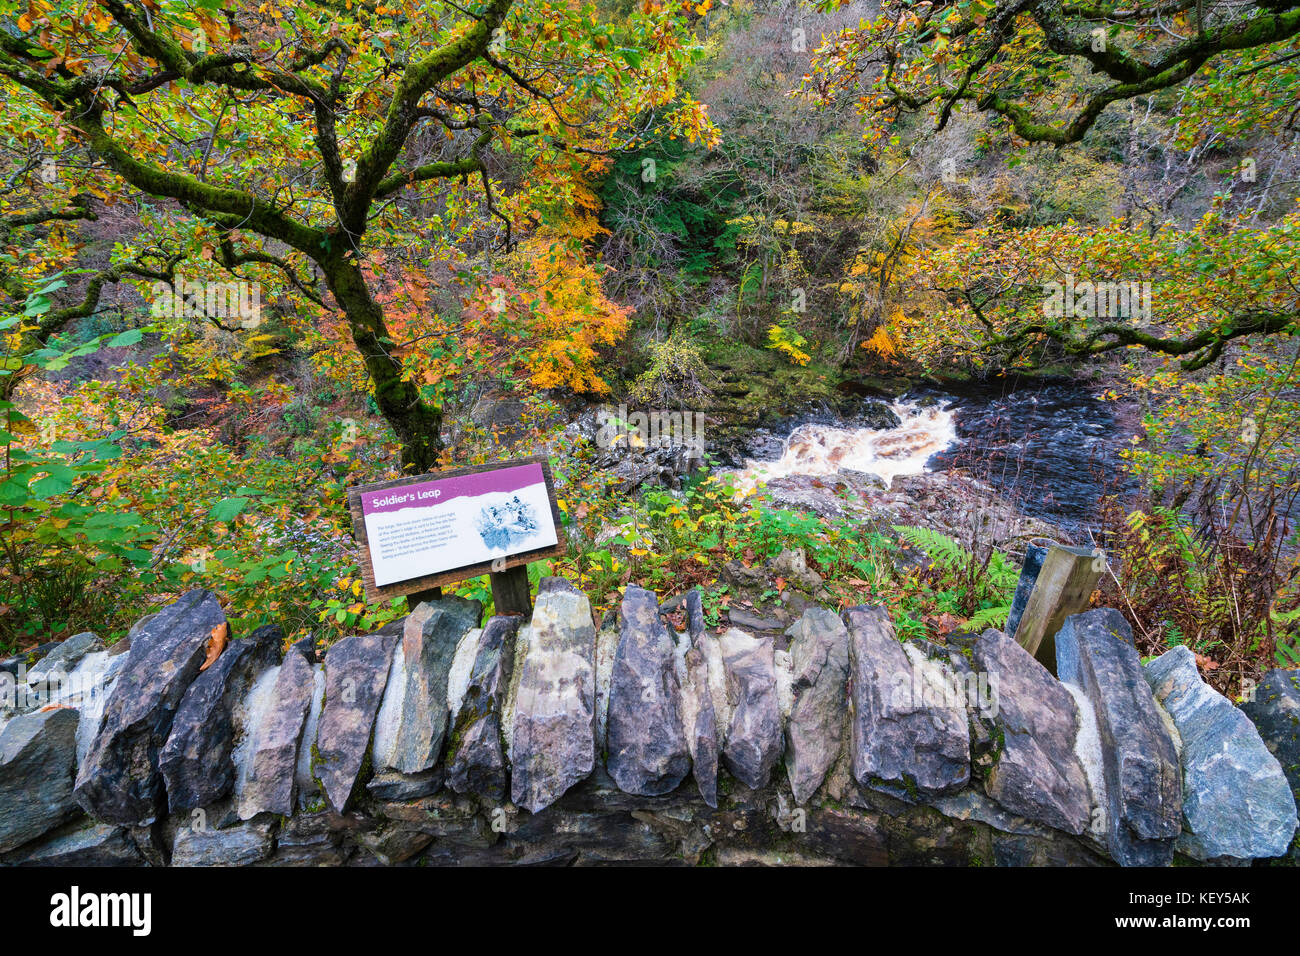 Spettacolari colori autunnali nel bosco naturale sulle rive del fiume Garry presso lo storico Passo di Killiecrankie al Soldier's Leap vicino a Pitlochry. Foto Stock